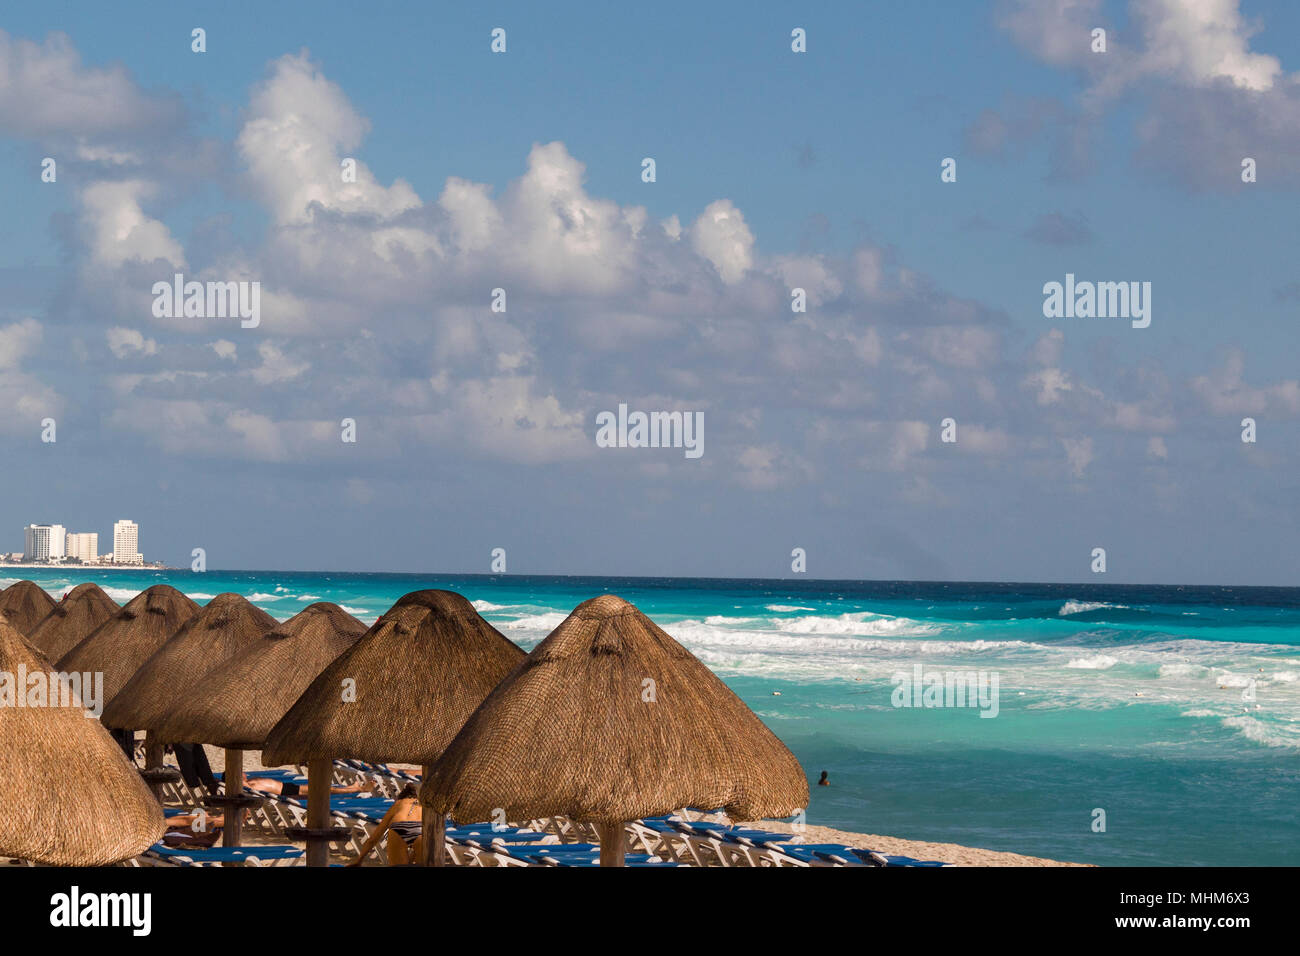 Plages de sable des Caraïbes eau turquoise et ciel bleu Banque D'Images